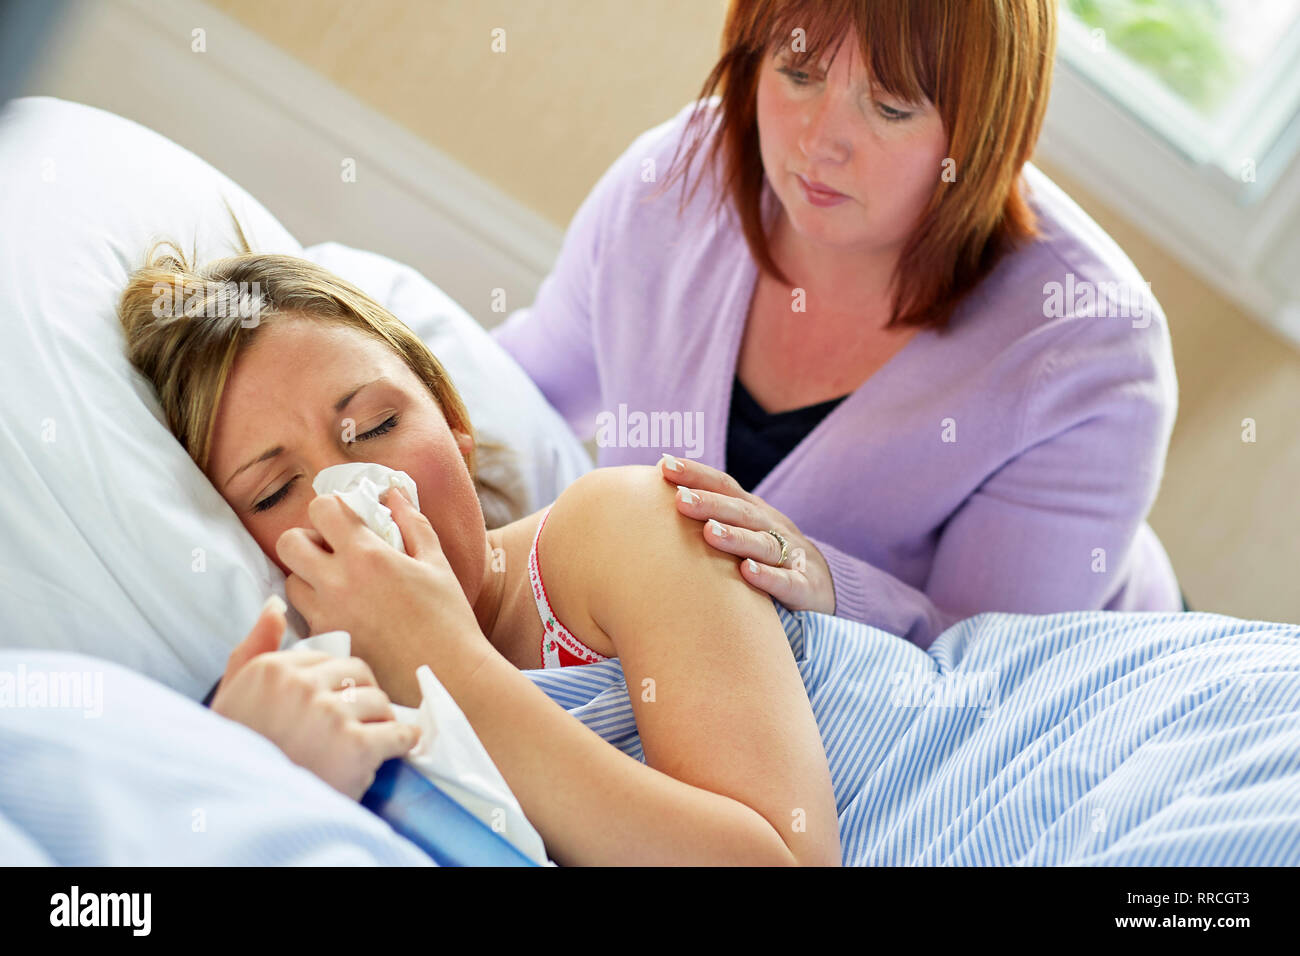 Adolescente sentado en la cama con la gripe Foto de stock